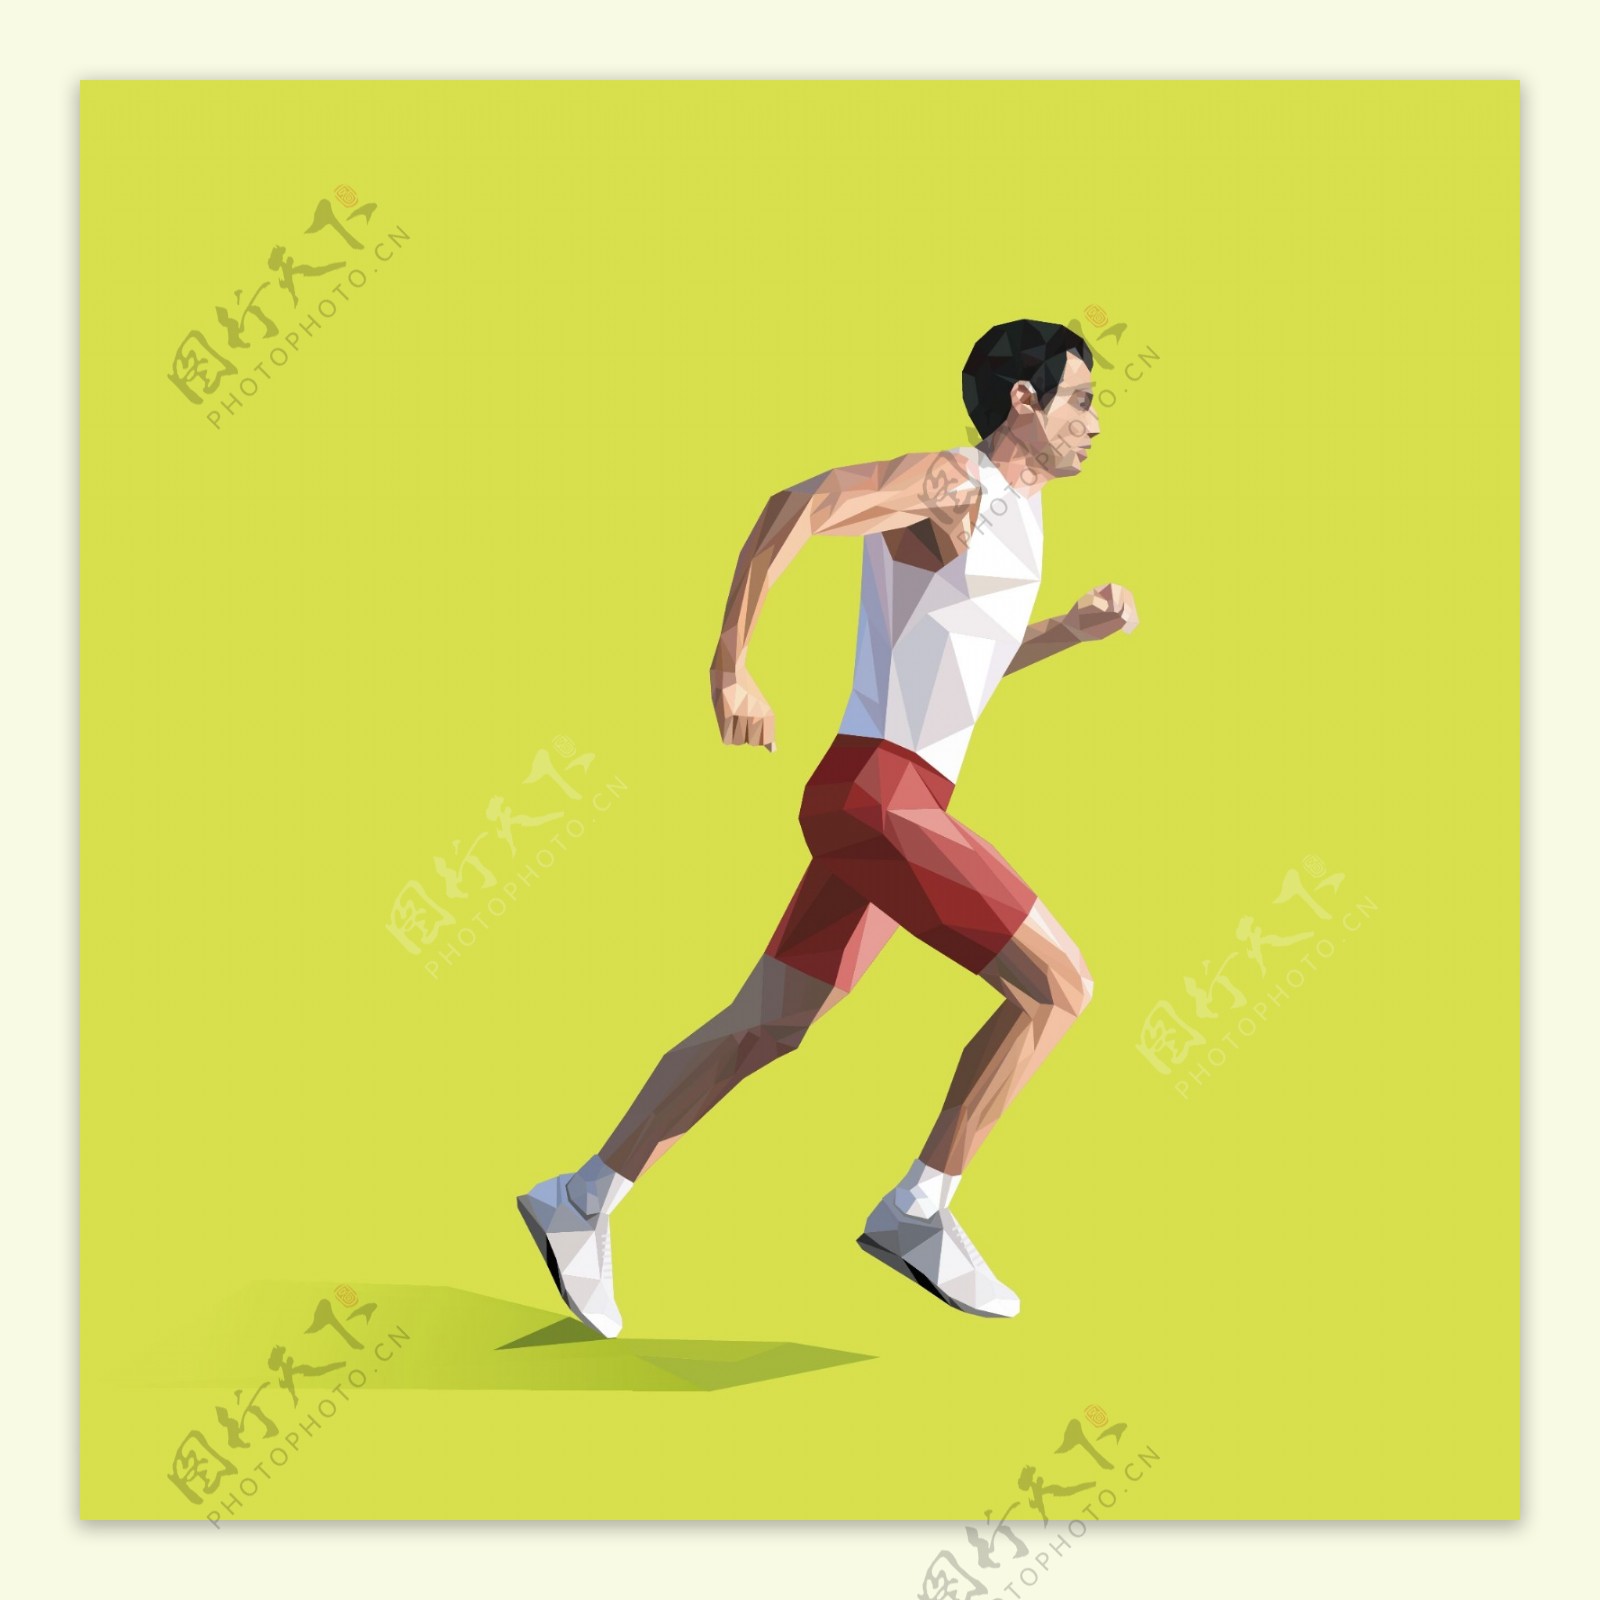 抽象跑步男子设计矢量素材.